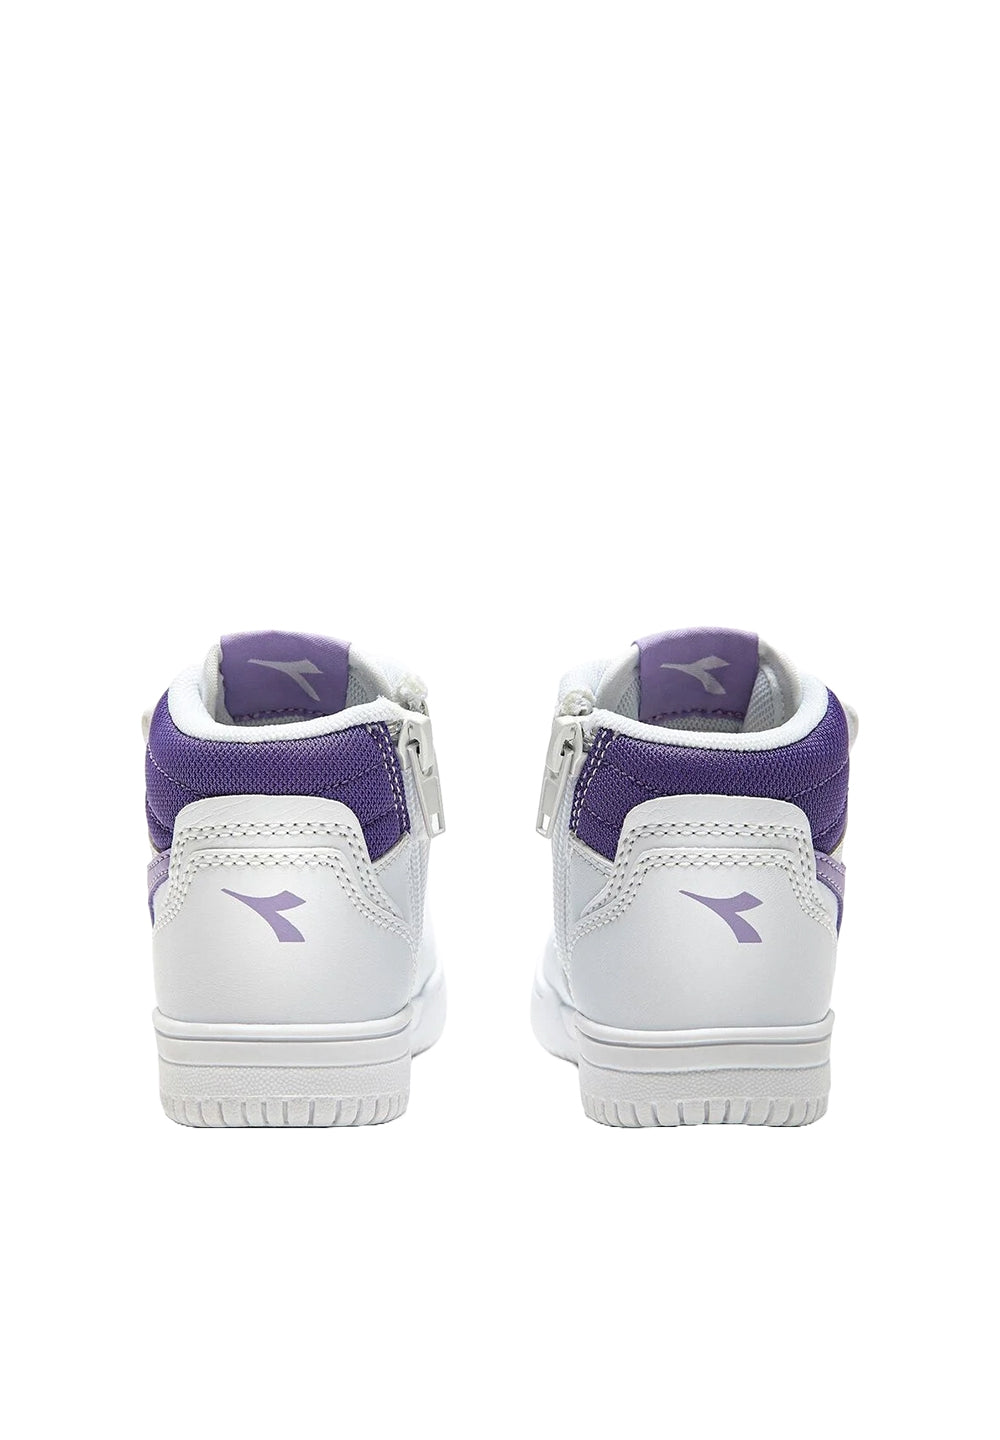 Scarpe bianco-viola per neonata